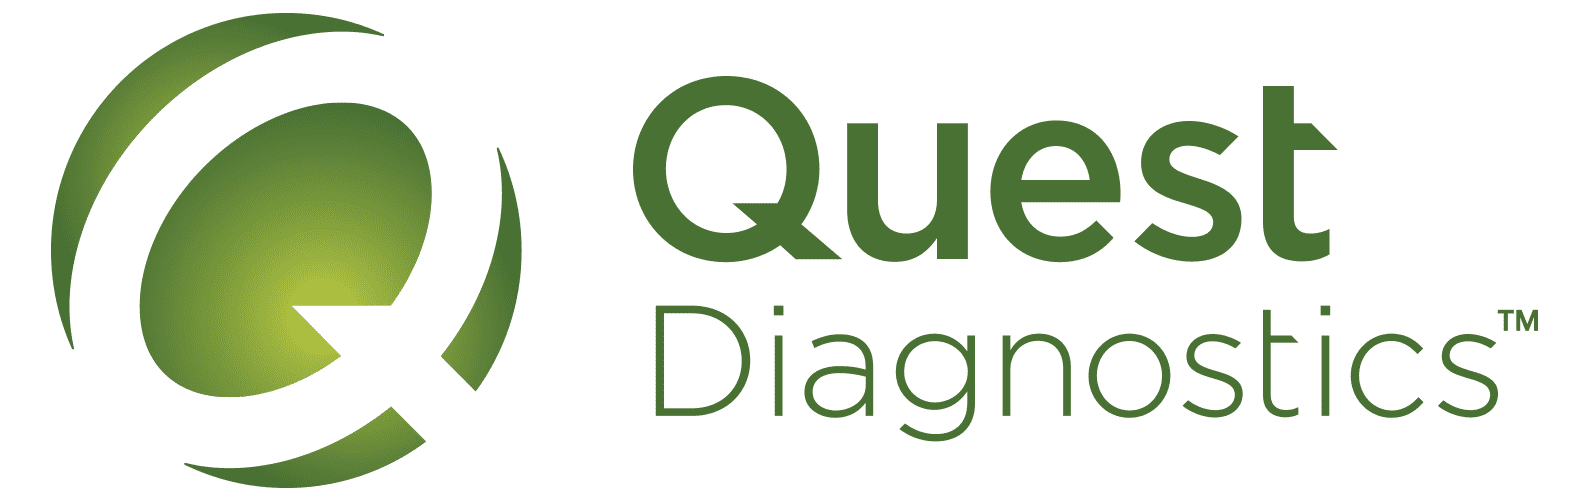 Quest-Diagnostics-logo